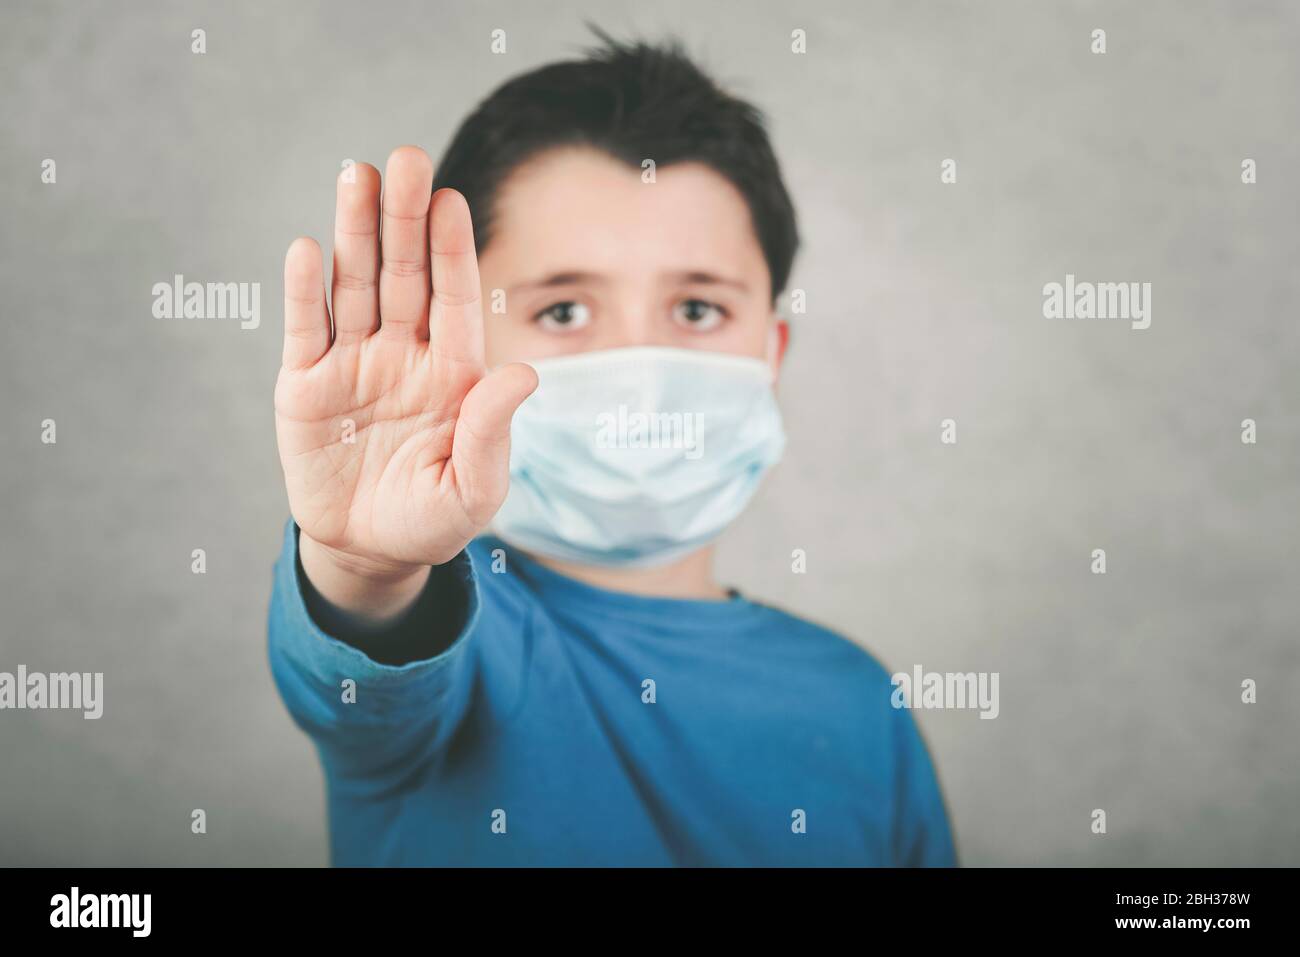 Arrêter le coronavirus, enfant portant un masque médical montrant un signe d'arrêt sur fond gris, flou d'arrière-plan Banque D'Images